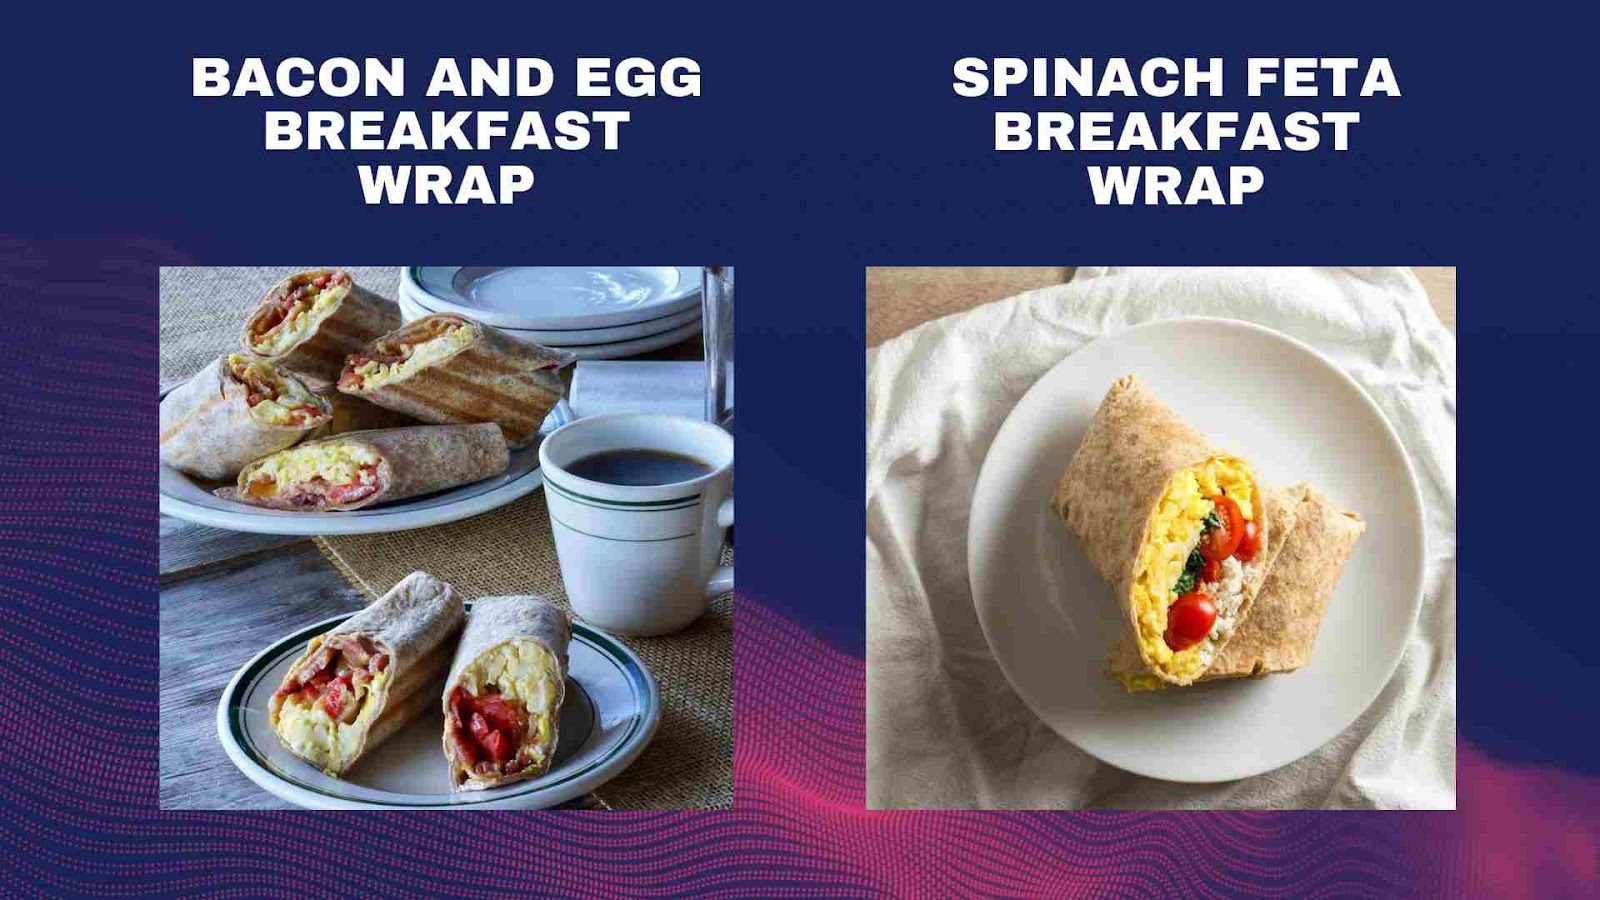 Bacon and Egg Wrap & Spinach Feta Wrap